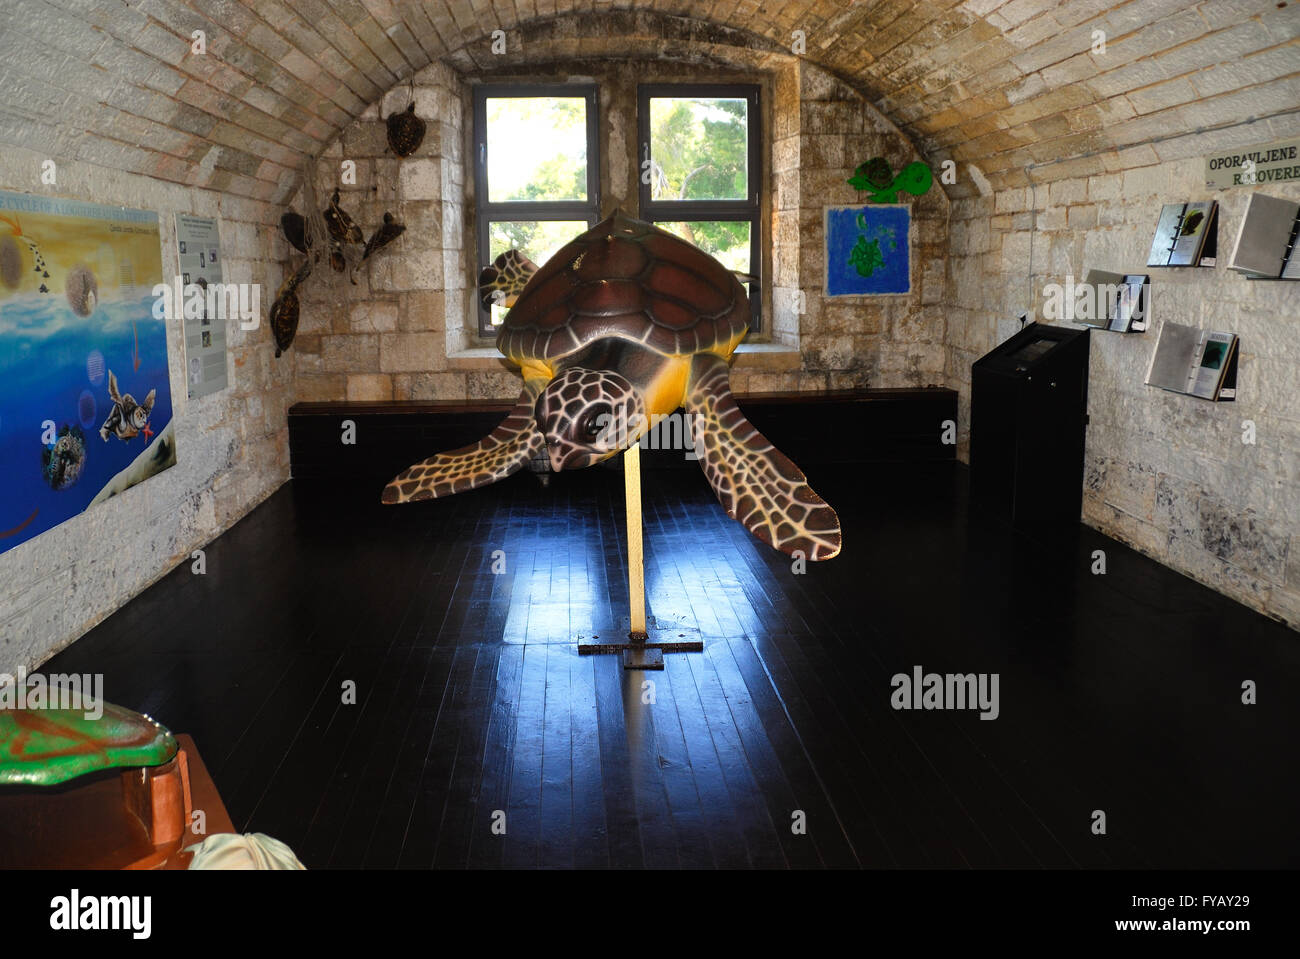 Verudela, Pola, Istria, Croazia. La tartaruga di mare centro di recupero  della Pula Aquarium si trova all'interno dell'Impero Austro-ungarico  Verudela fortezza militare, costruito nel 1886 sulla penisola Verudela, a 3  km dal